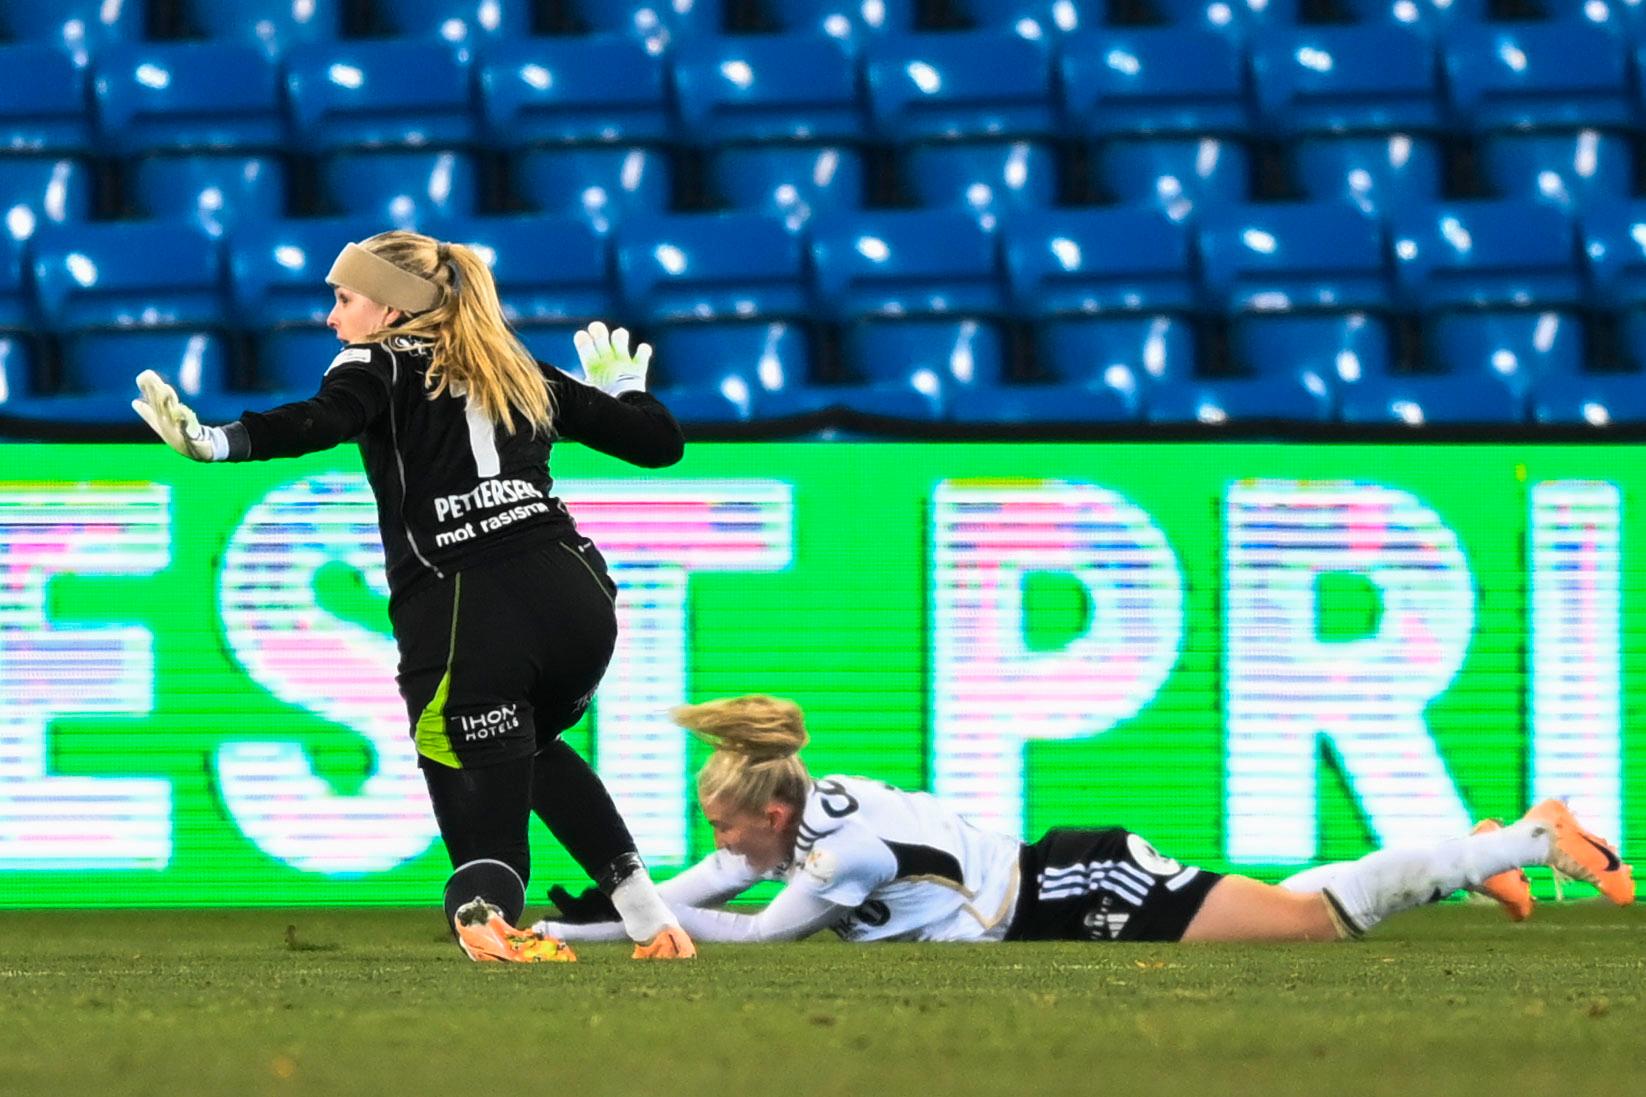 Rigore: Juru Petersen ha commesso fallo su Emily Nutnes e al Rosenborg è stato concesso un rigore.  Quest'ultimo è rimasto sorridente sull'erba dopo la decisione.